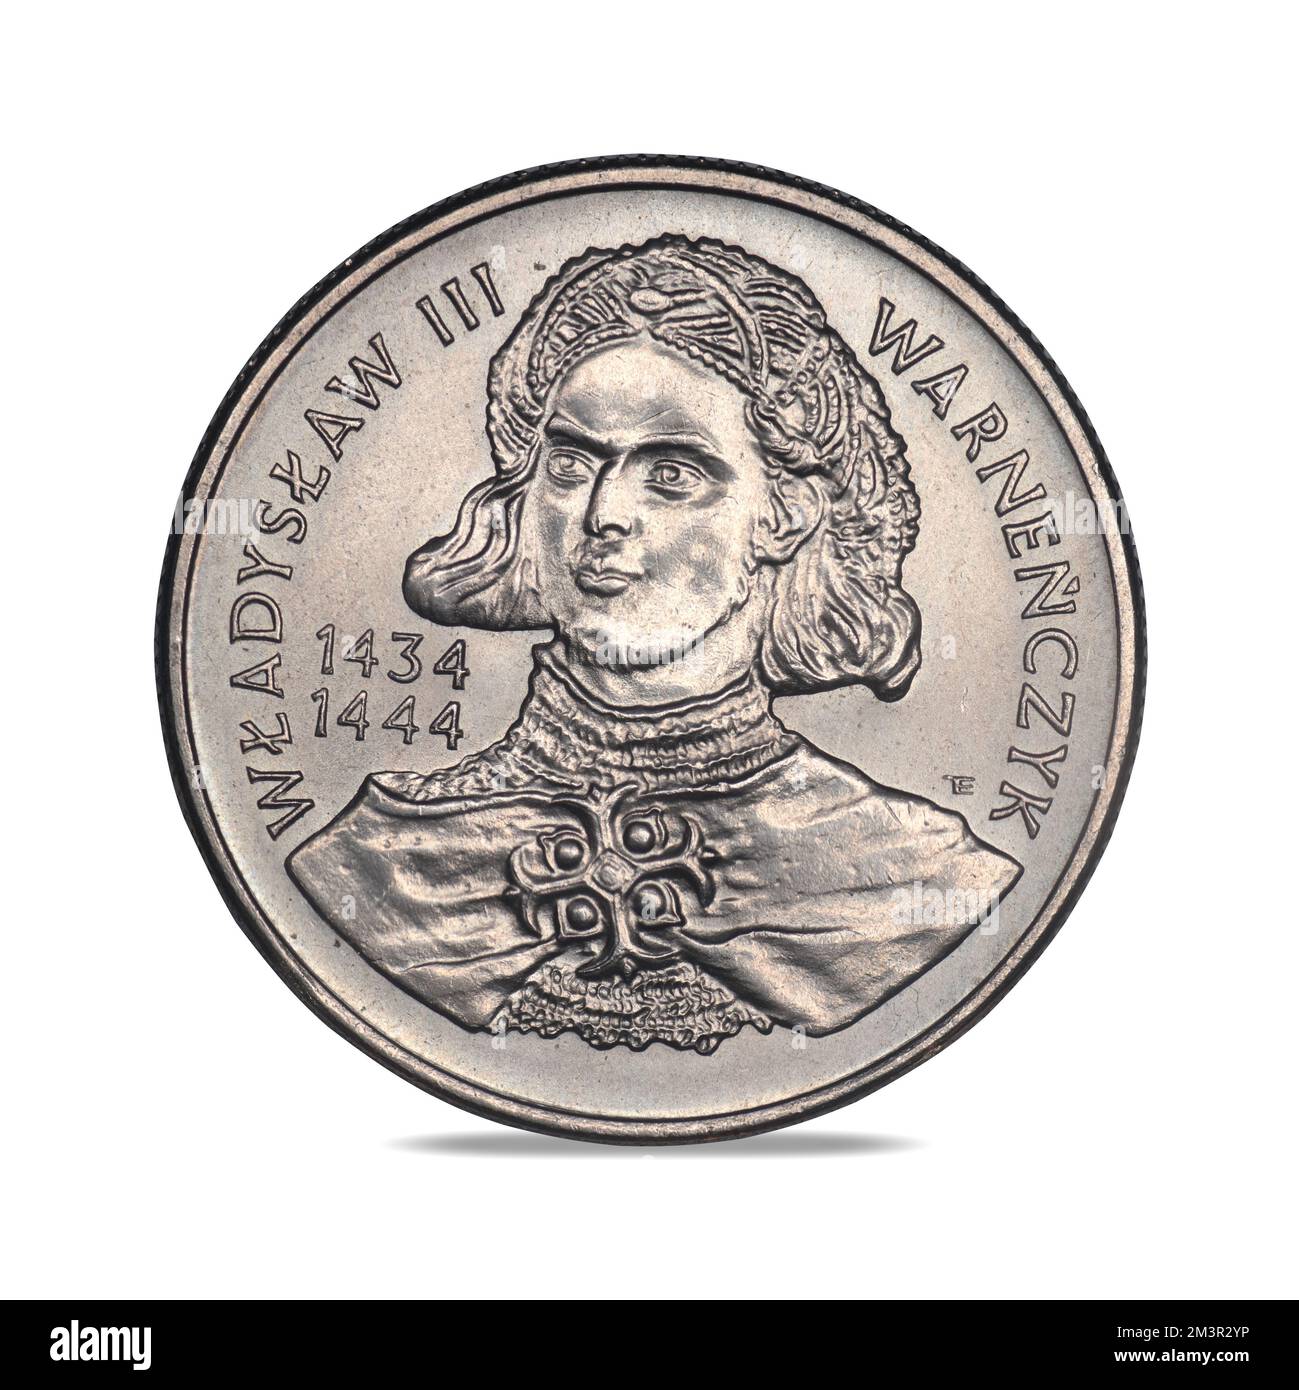 Polish circulation coin with king Władysław III Warneńczyk on a white background Stock Photo